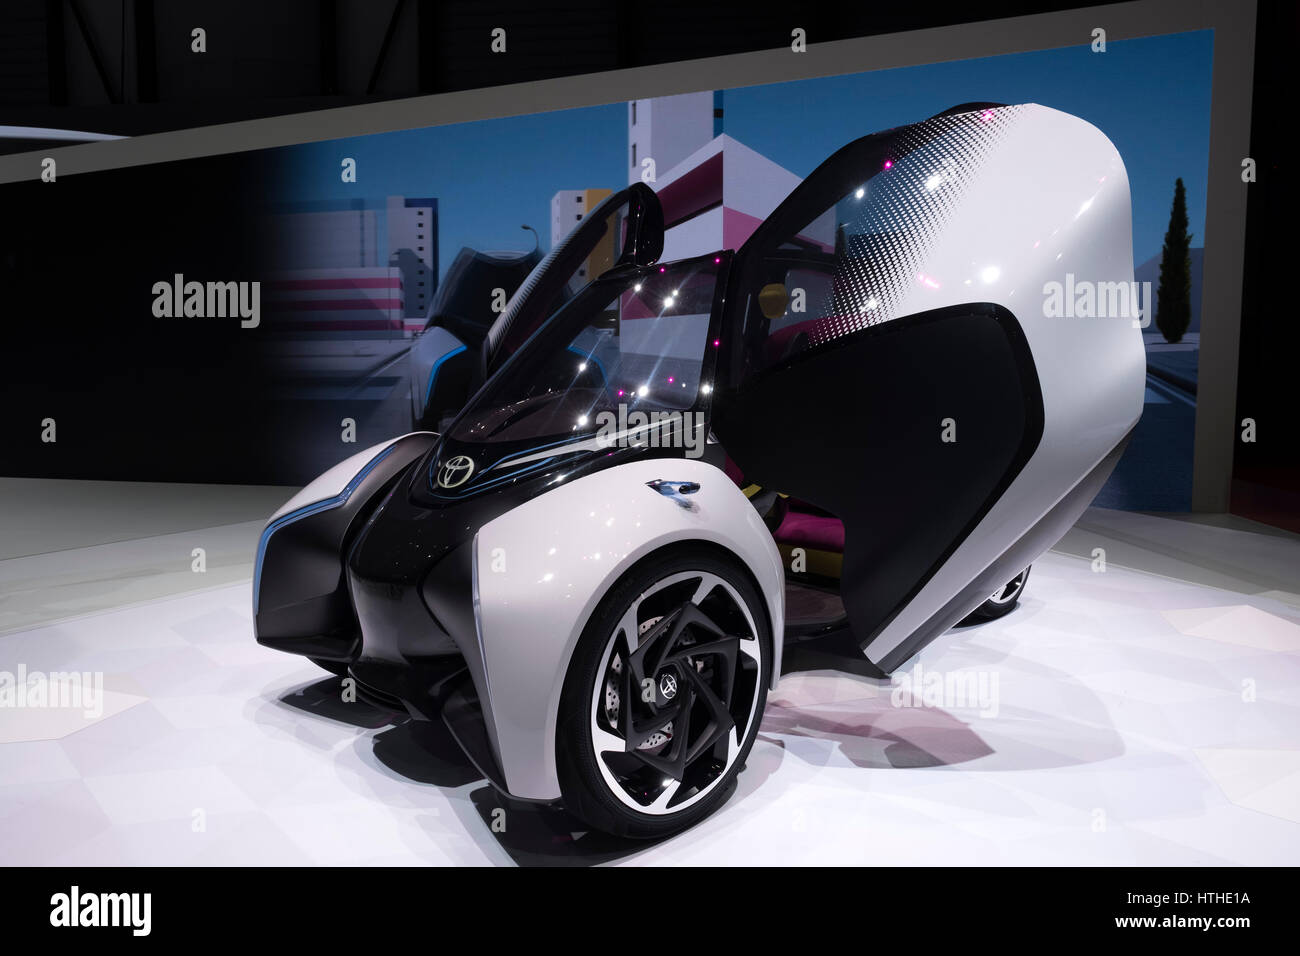 I-Toyota city car électrique Tril concept au 87e Salon International de l'Automobile à Genève Suisse 2017 Banque D'Images